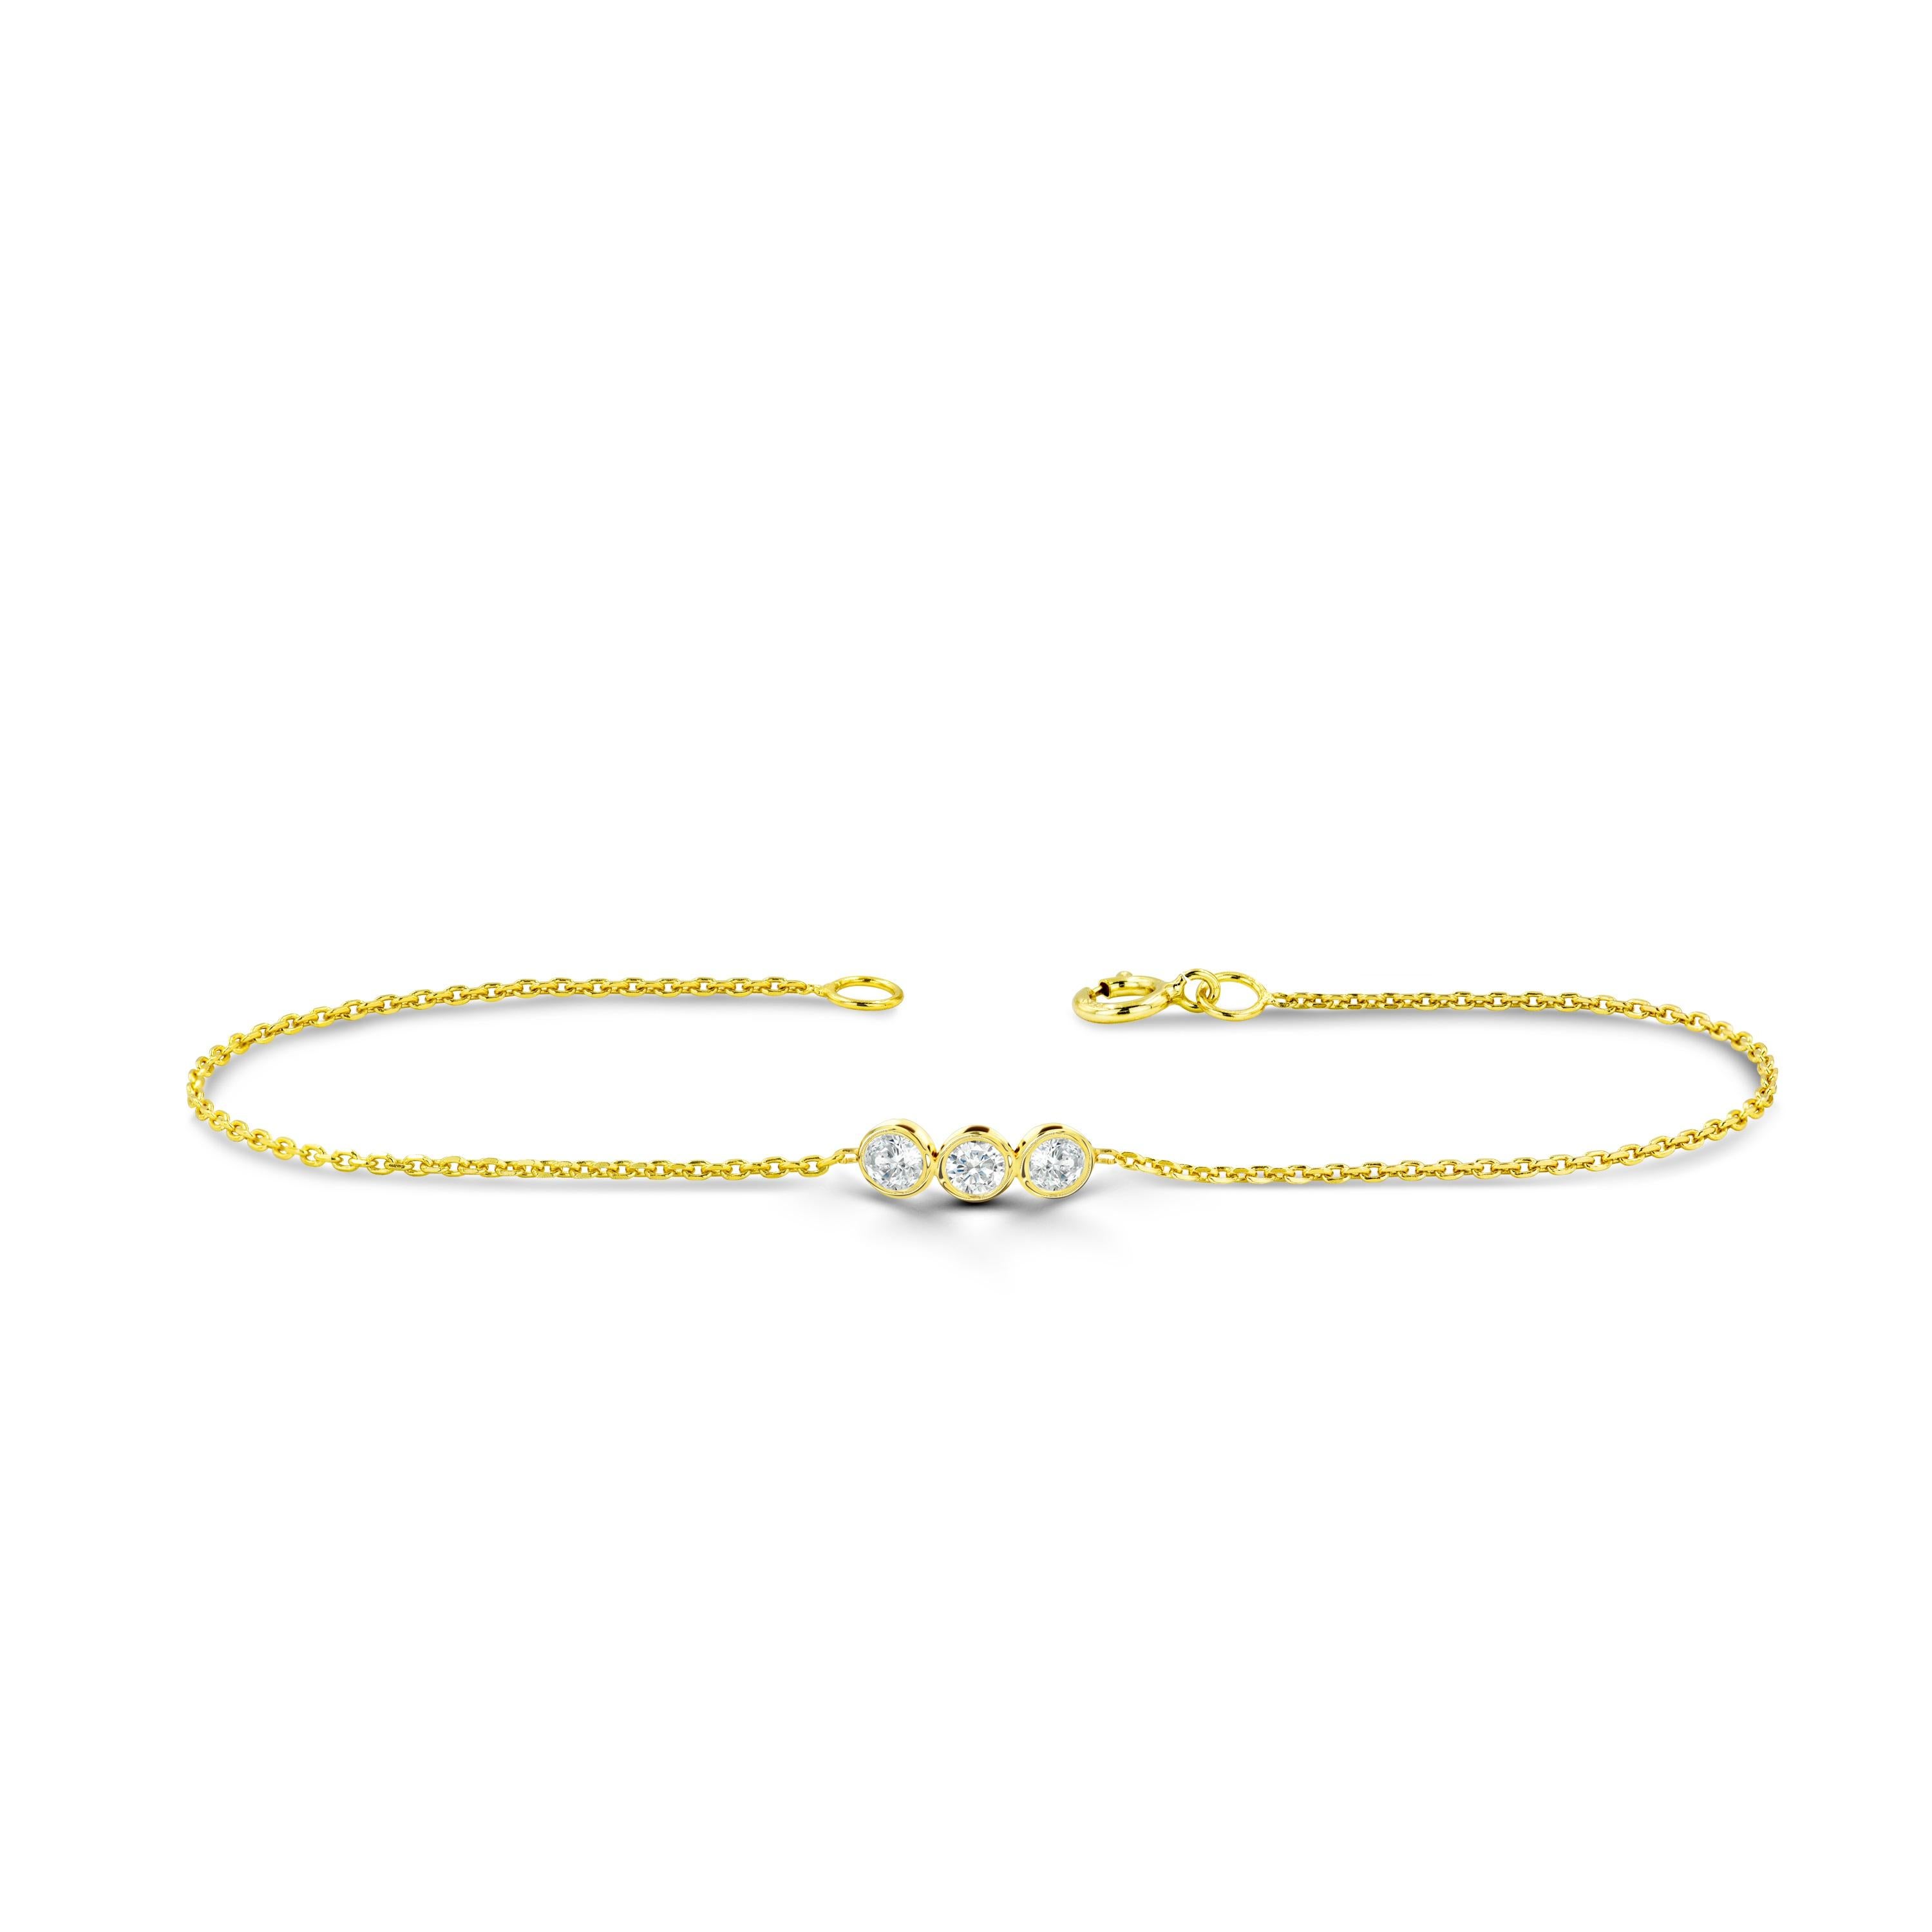 Le Bracelet Minimal Délicat est fabriqué en or massif 14k.
Disponible en trois couleurs d'or : Or blanc / Or rose / Or jaune.

Diamant naturel véritable de taille ronde : chaque diamant est sélectionné à la main par mes soins pour en garantir la